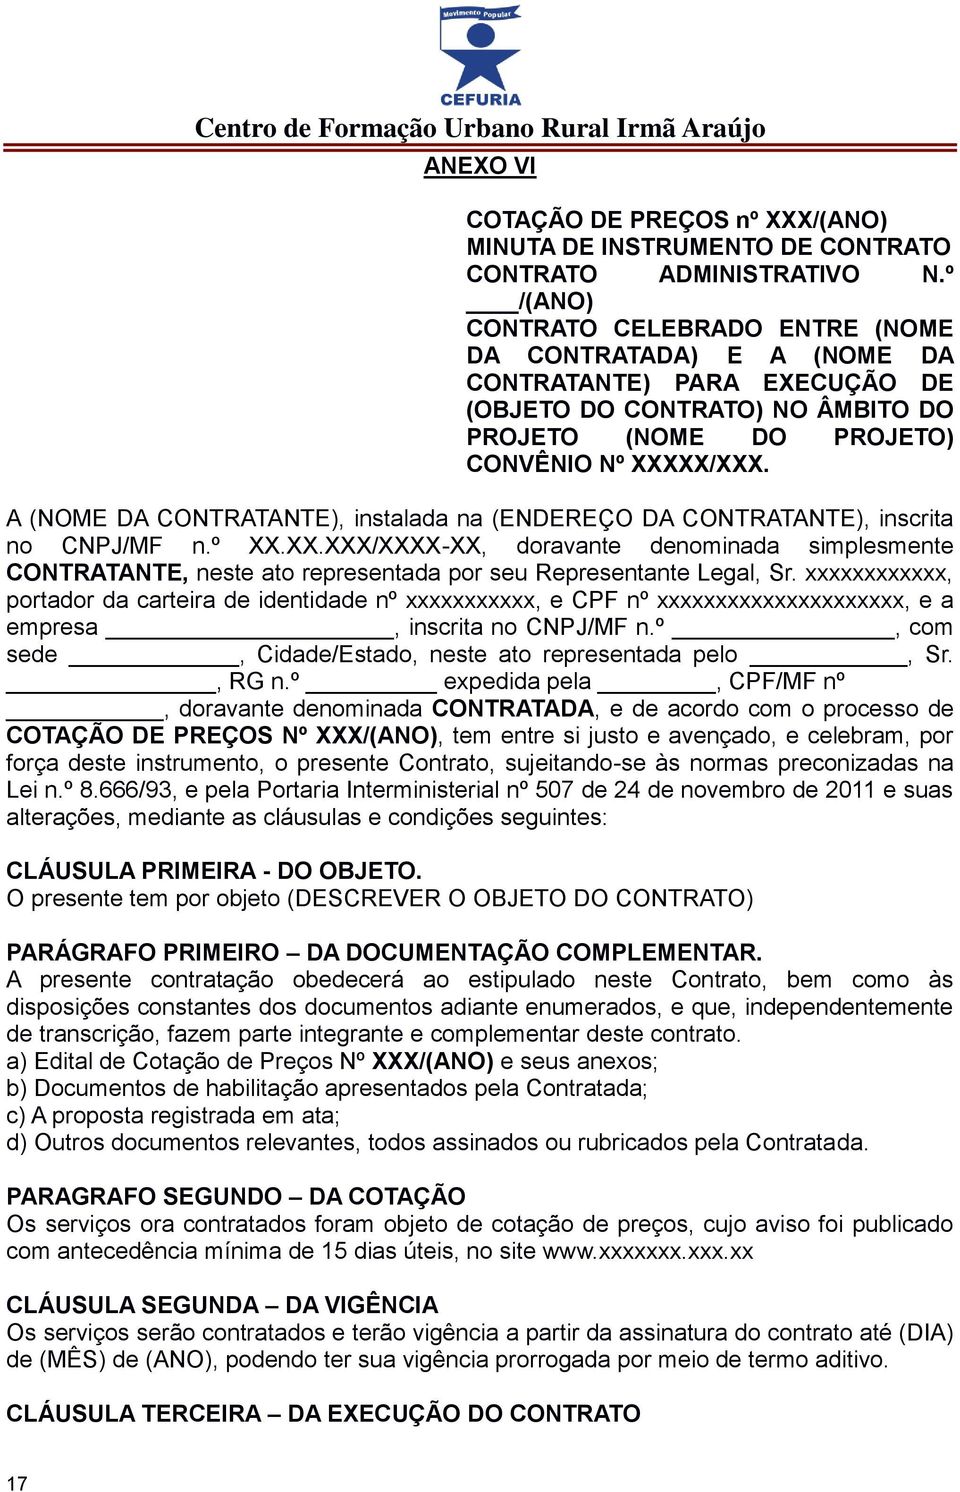 A (NOME DA CONTRATANTE), instalada na (ENDEREÇO DA CONTRATANTE), inscrita no CNPJ/MF n.º XX.